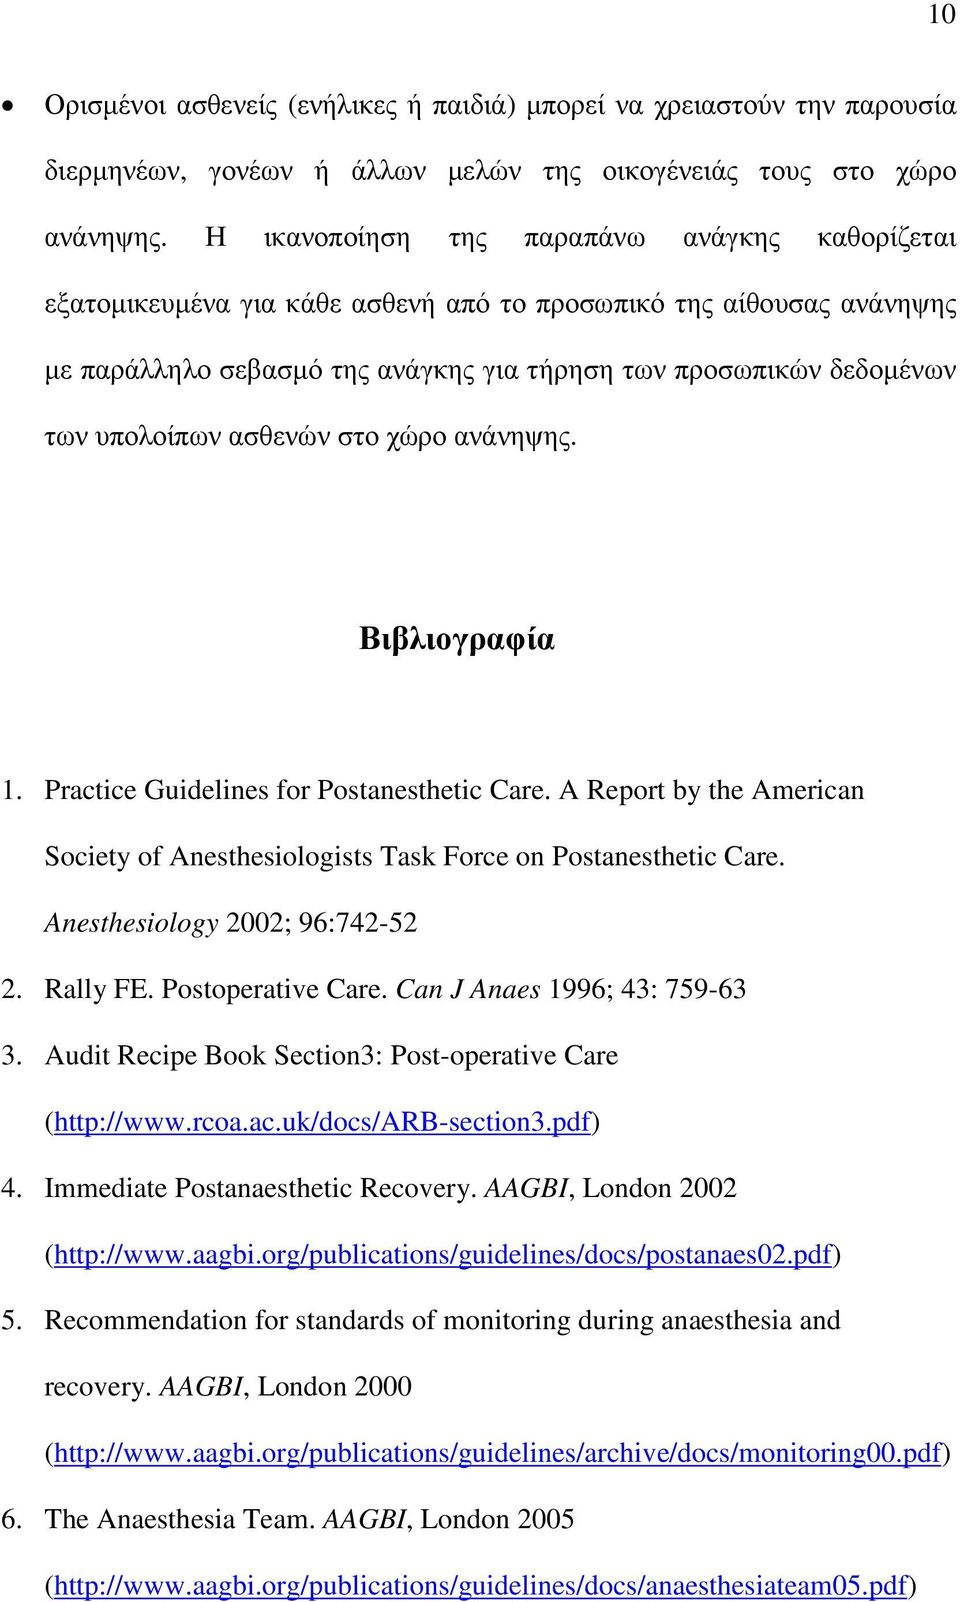 ασθενών στο χώρο ανάνηψης. Βιβλιογραφία 1. Practice Guidelines for Postanesthetic Care. A Report by the American Society of Anesthesiologists Task Force on Postanesthetic Care.